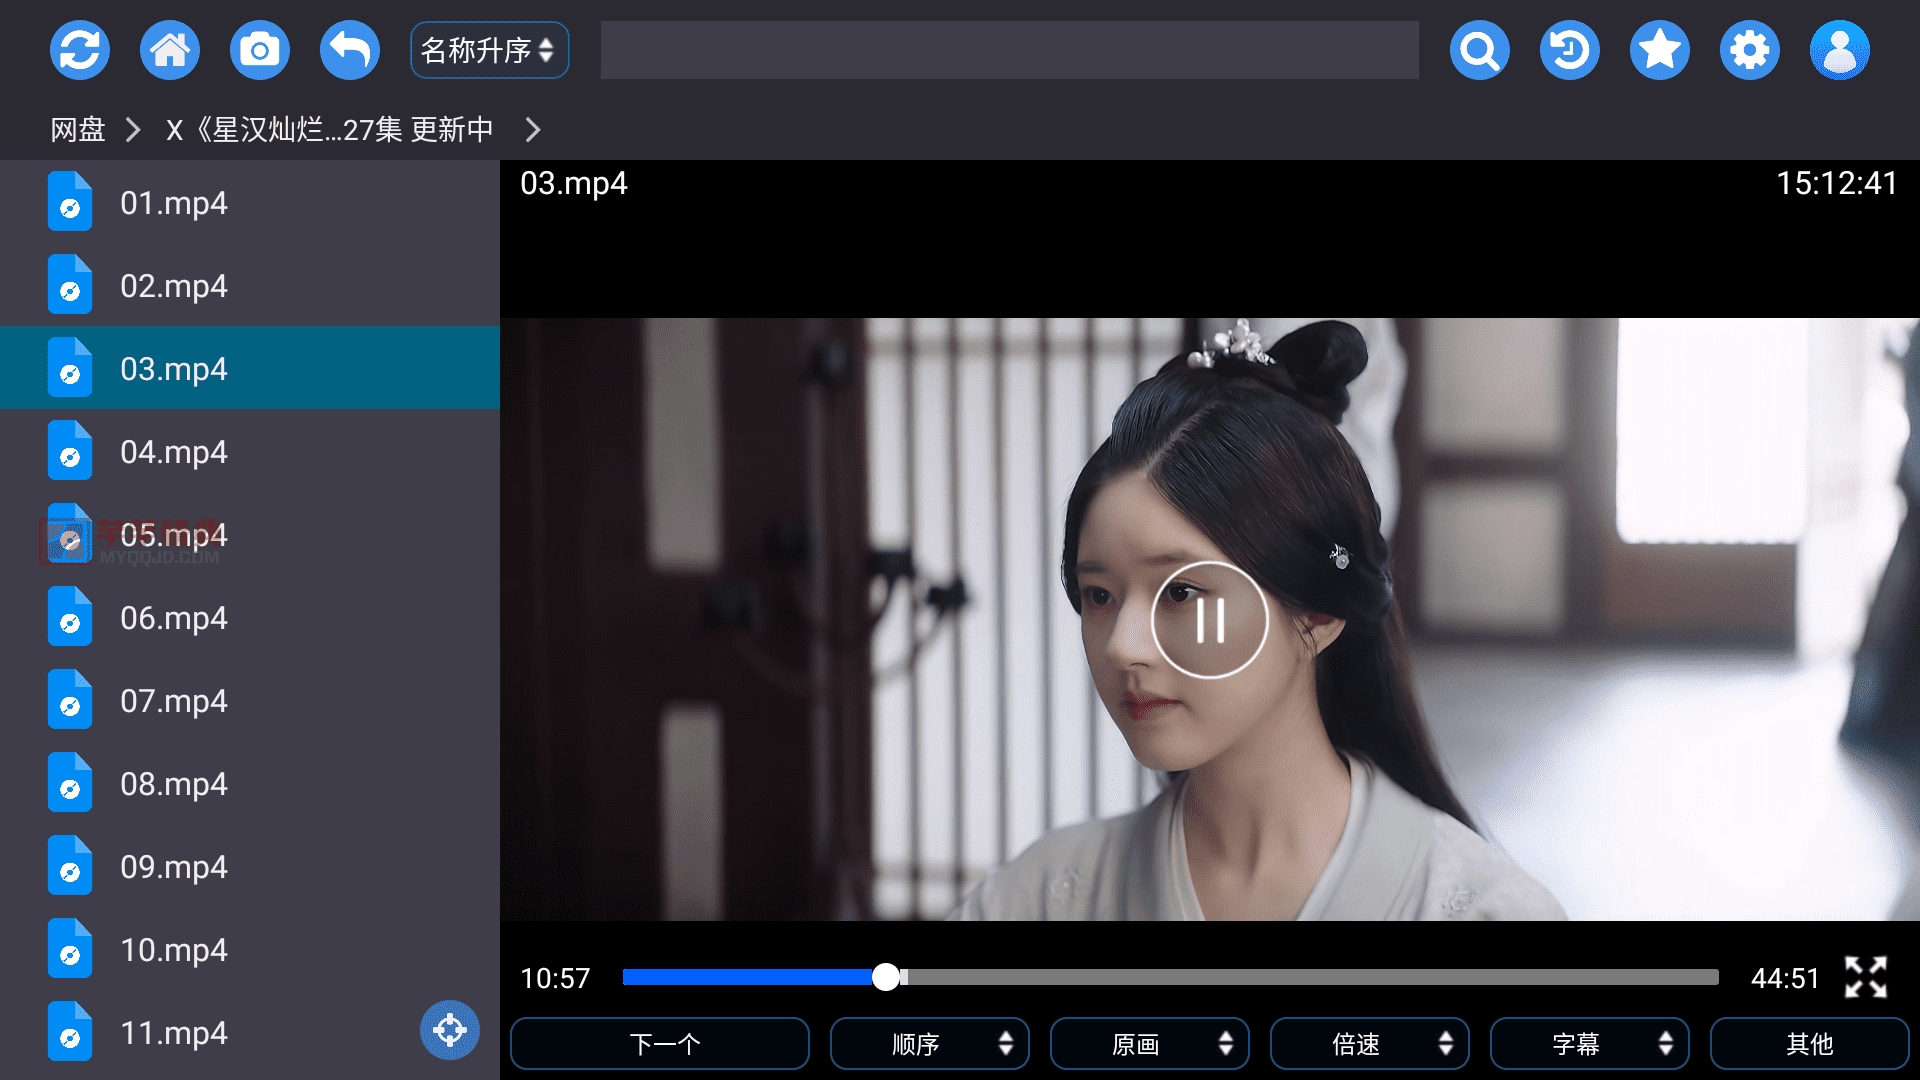 蜗牛云盘v2.2.6【TV+机车+手机】/第三方阿里云盘TV版